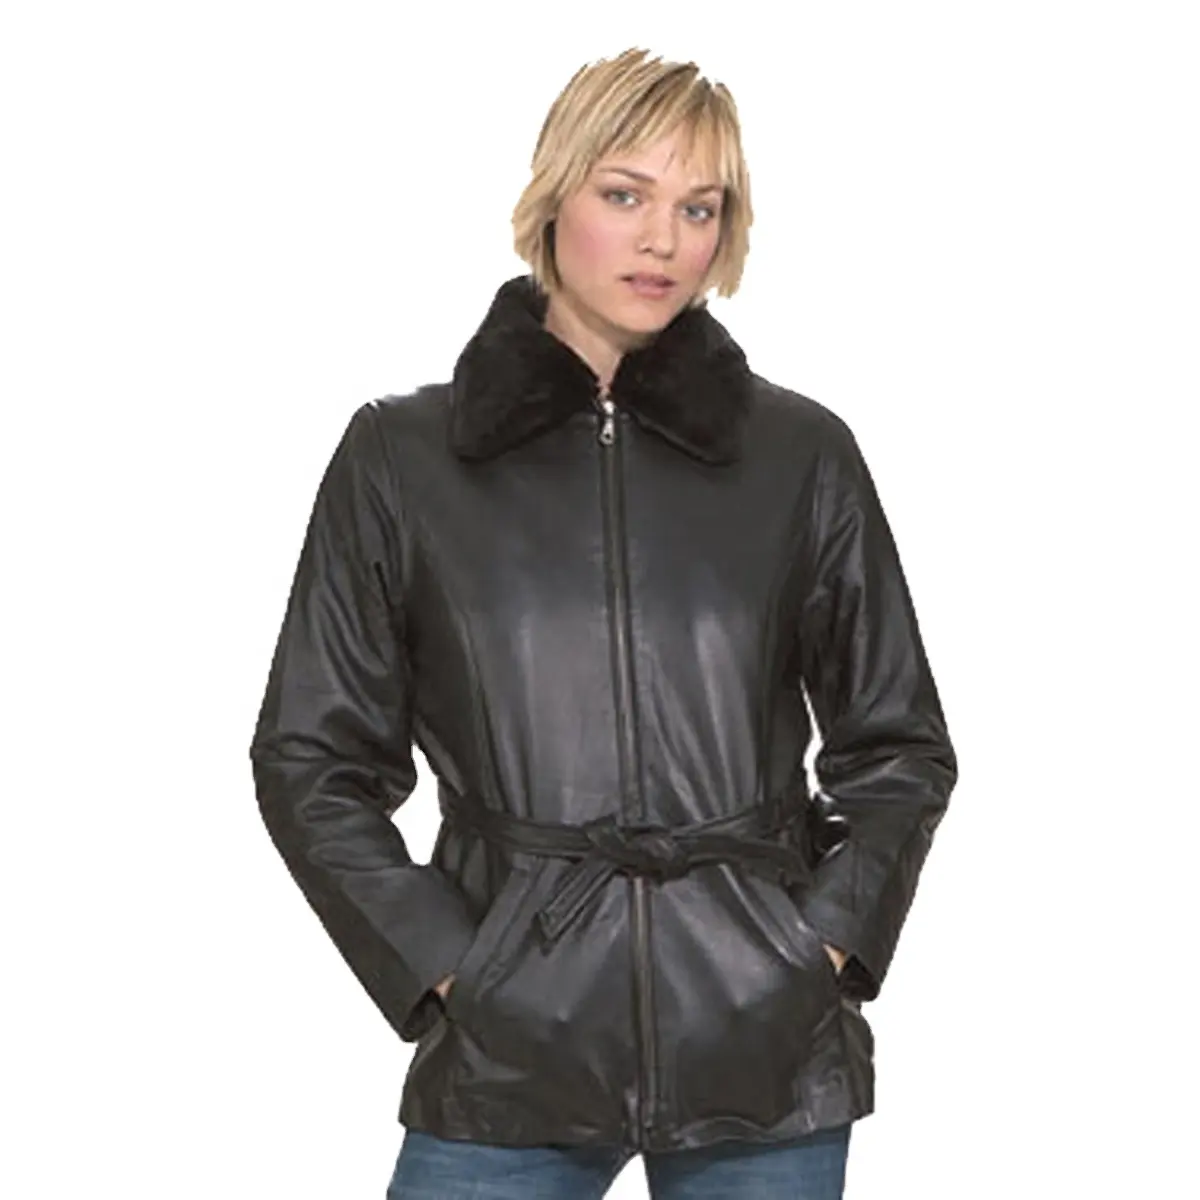 HMB-0279A 여성 가죽 자켓 오토바이 패션 코트 양가죽 도매 재킷 코트 퍼 칼라